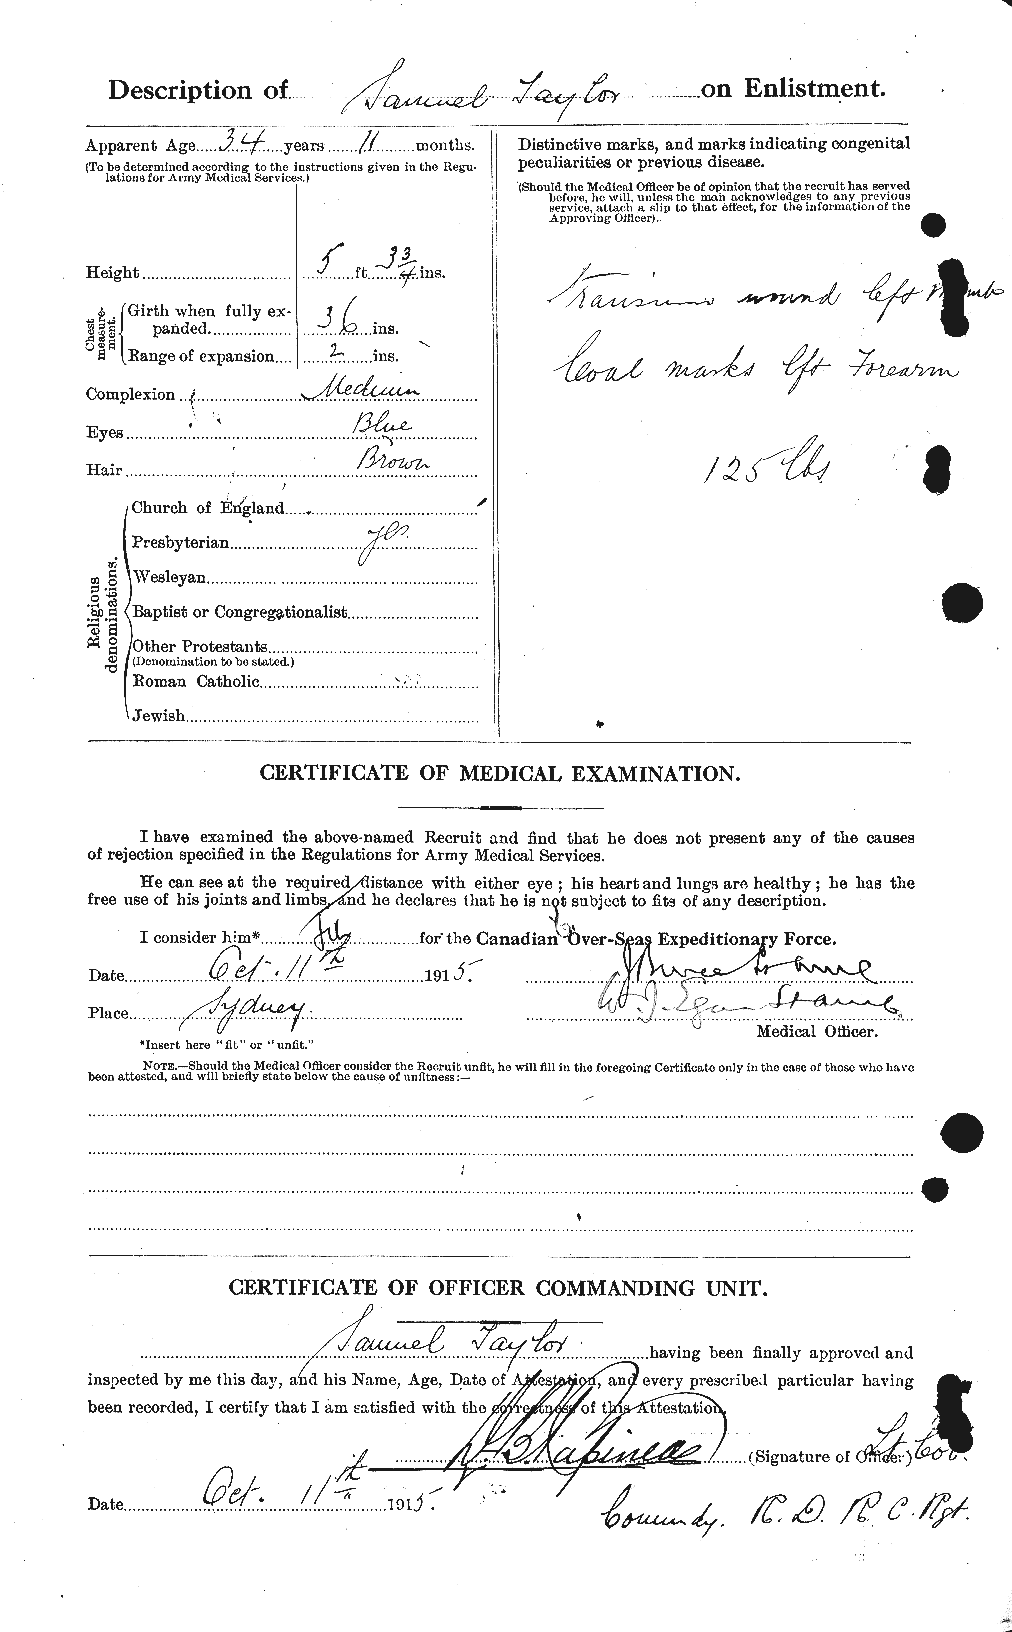 Dossiers du Personnel de la Première Guerre mondiale - CEC 627551b